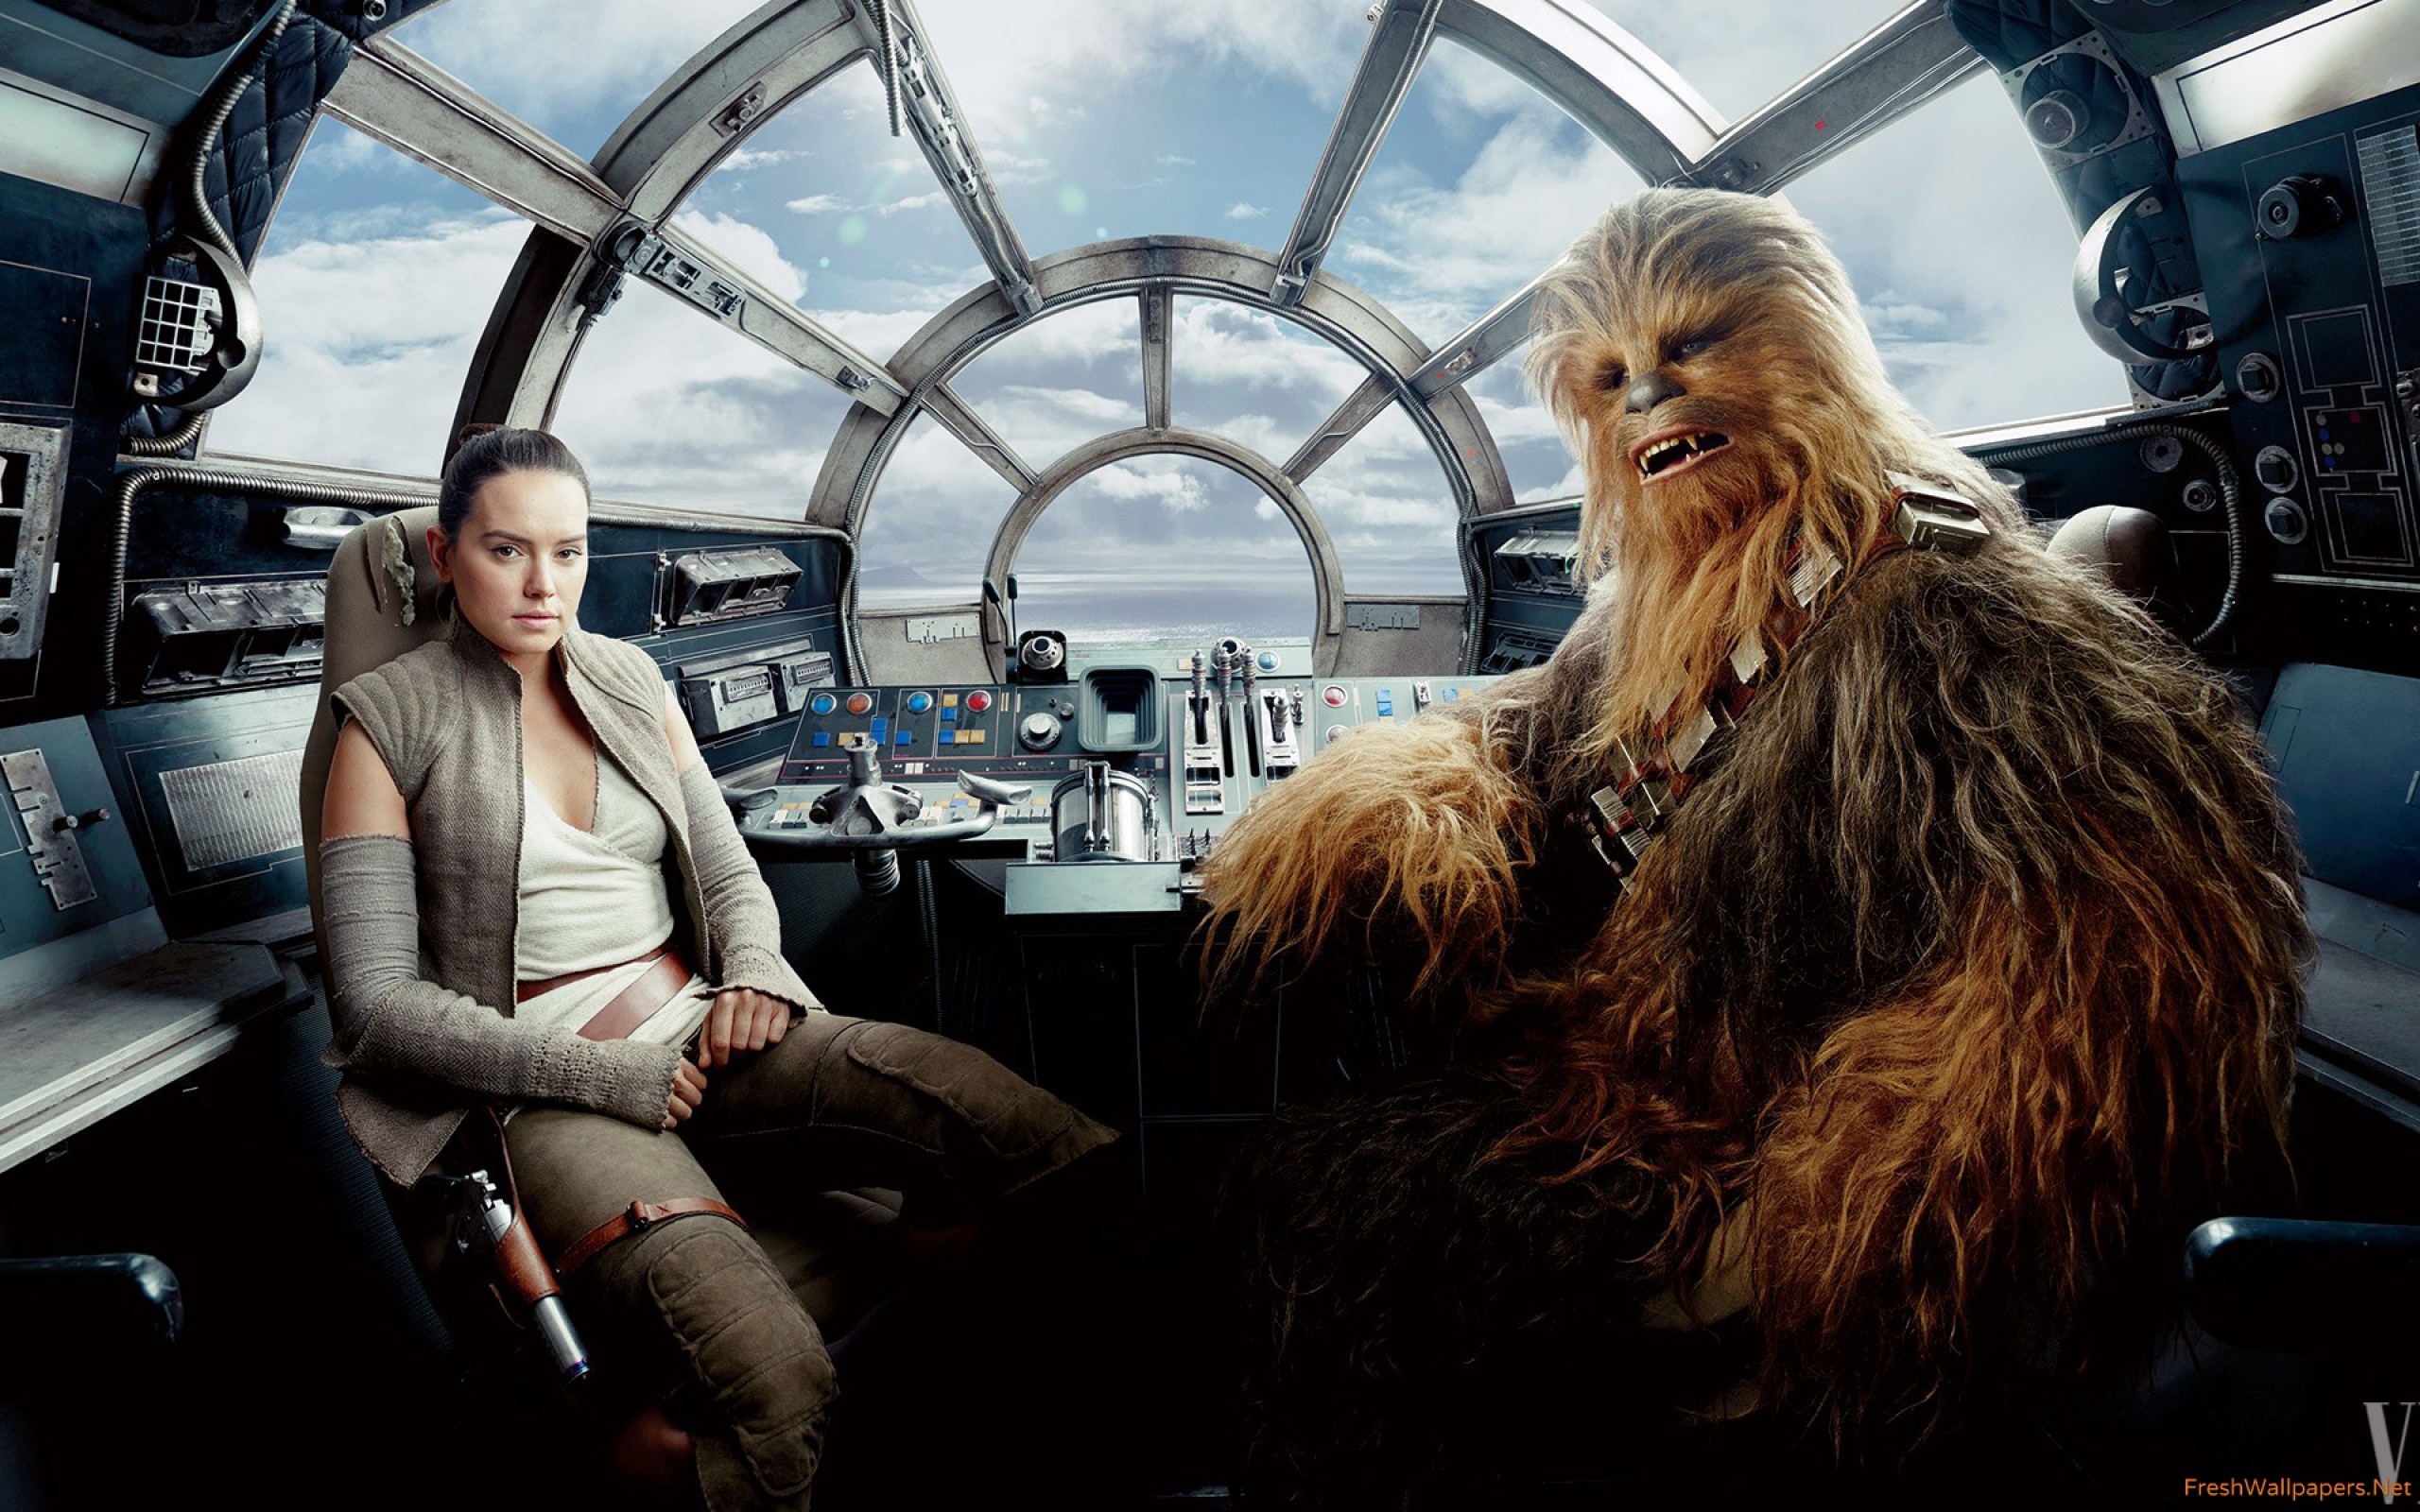 Chewbacca Star Wars The Last Jedi - HD Wallpaper 